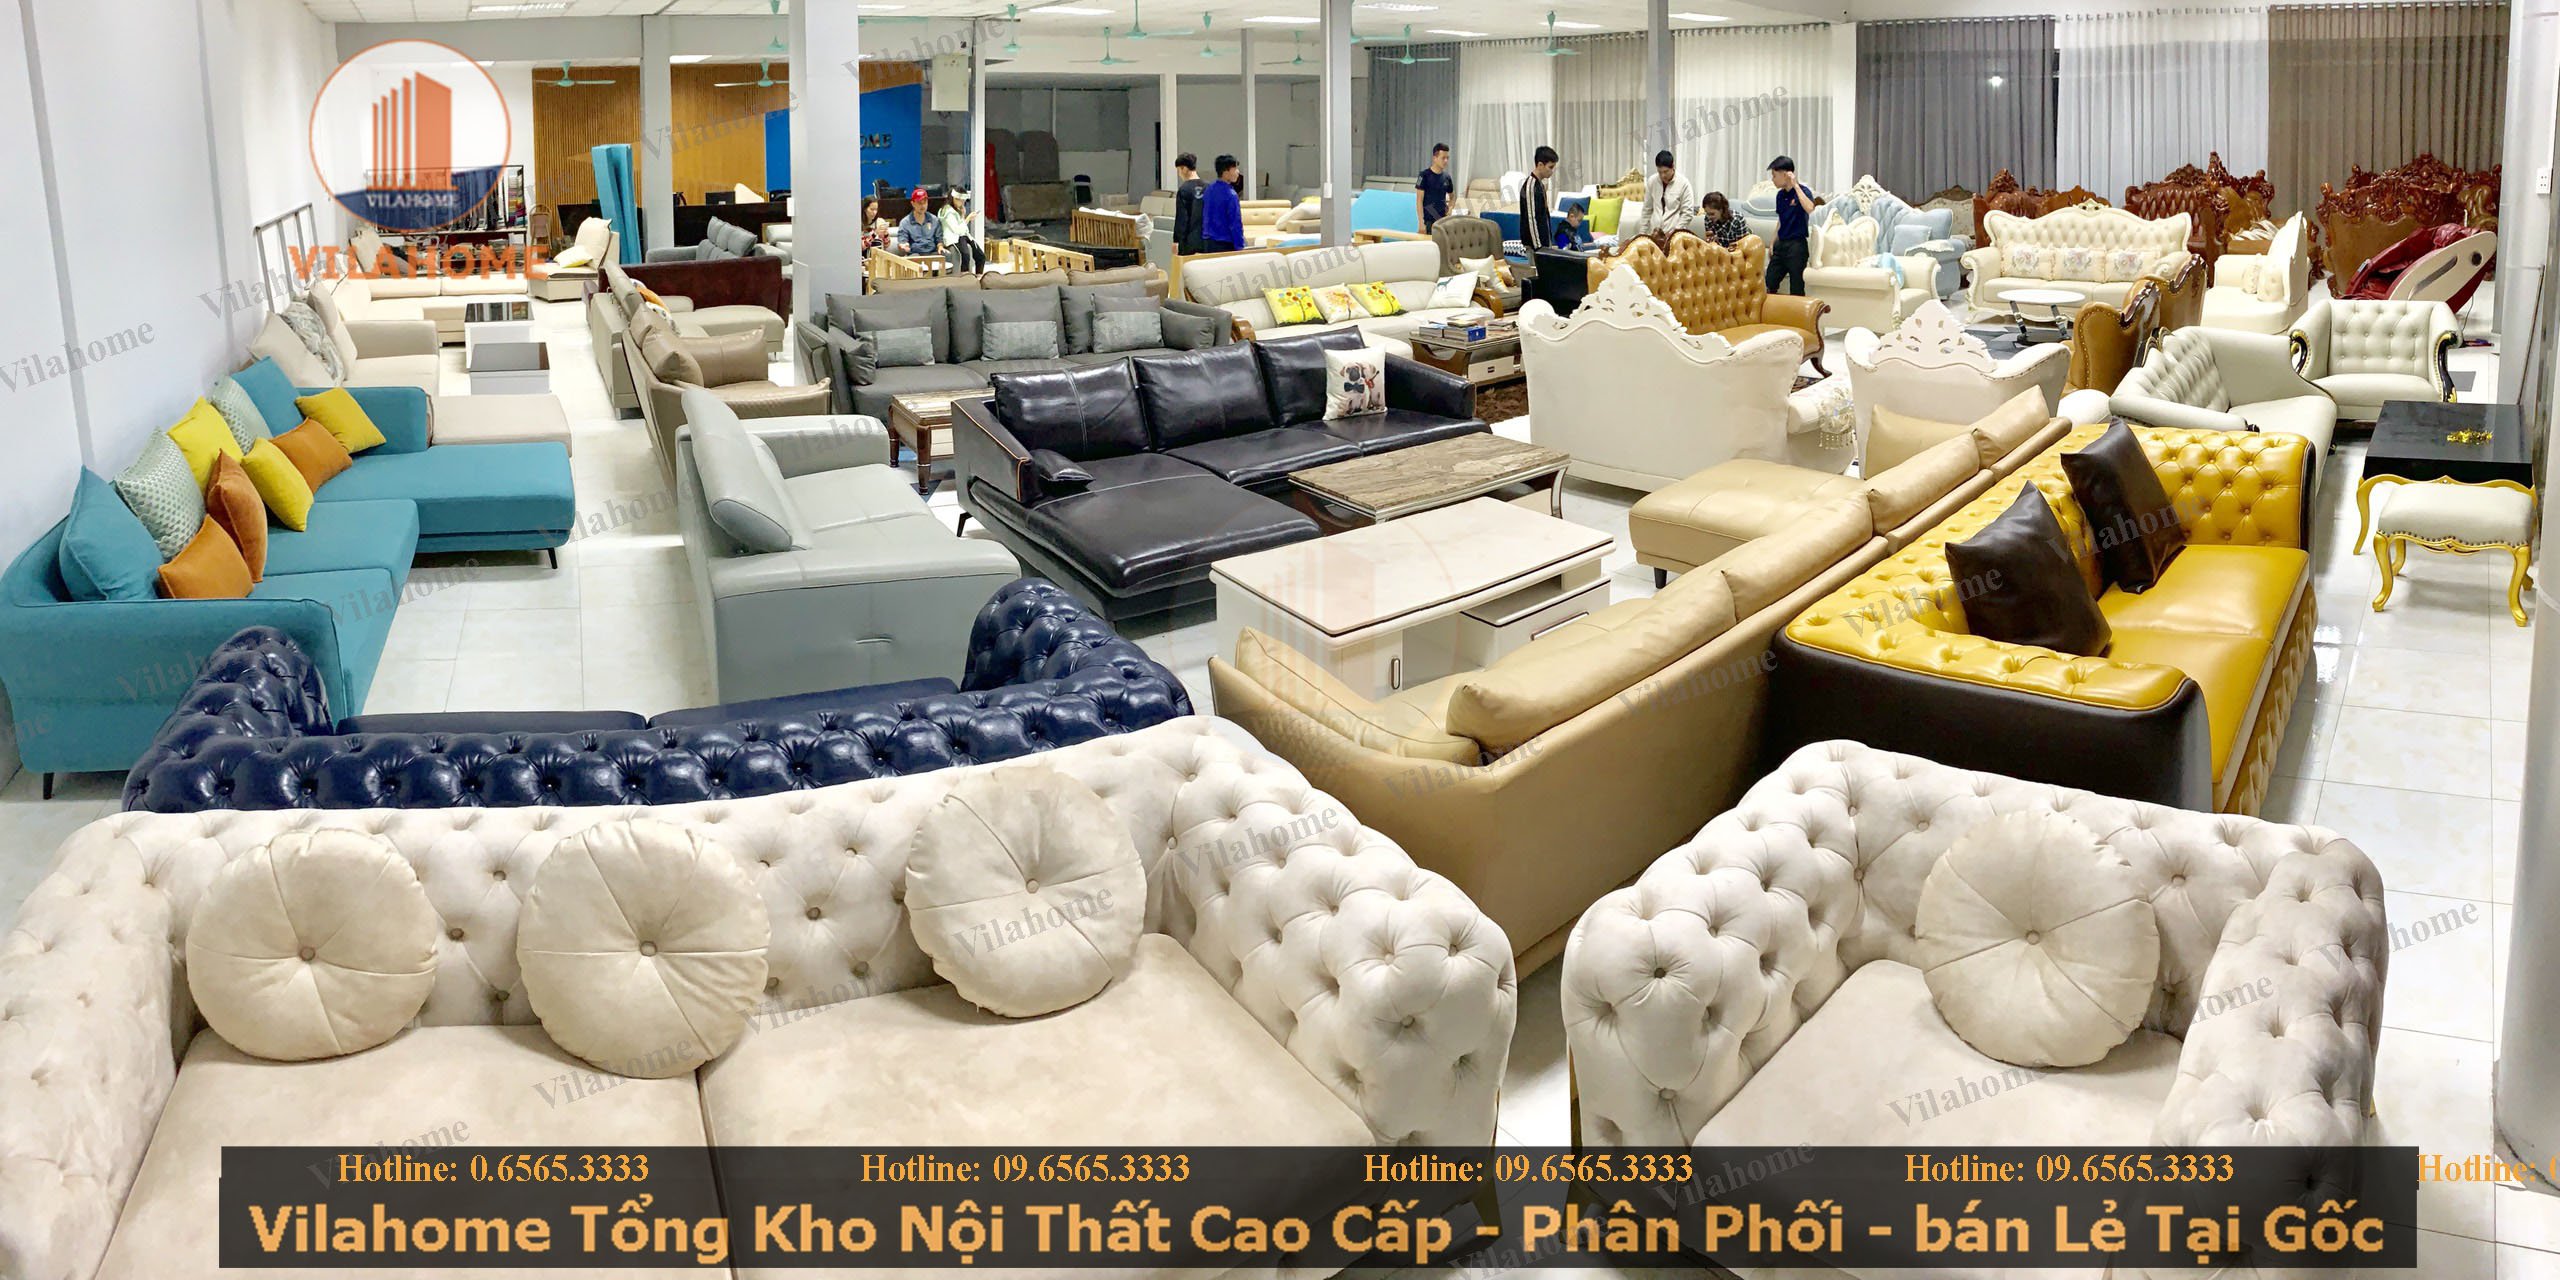 Nội thất không thể thiếu sofa. Với các mẫu sofa đa dạng, chất lượng và giá cả hợp lý, cửa hàng của chúng tôi sẽ giúp bạn tìm được chiếc sofa ưng ý nhất. Hãy xem hình ảnh để chọn lựa sản phẩm phù hợp.